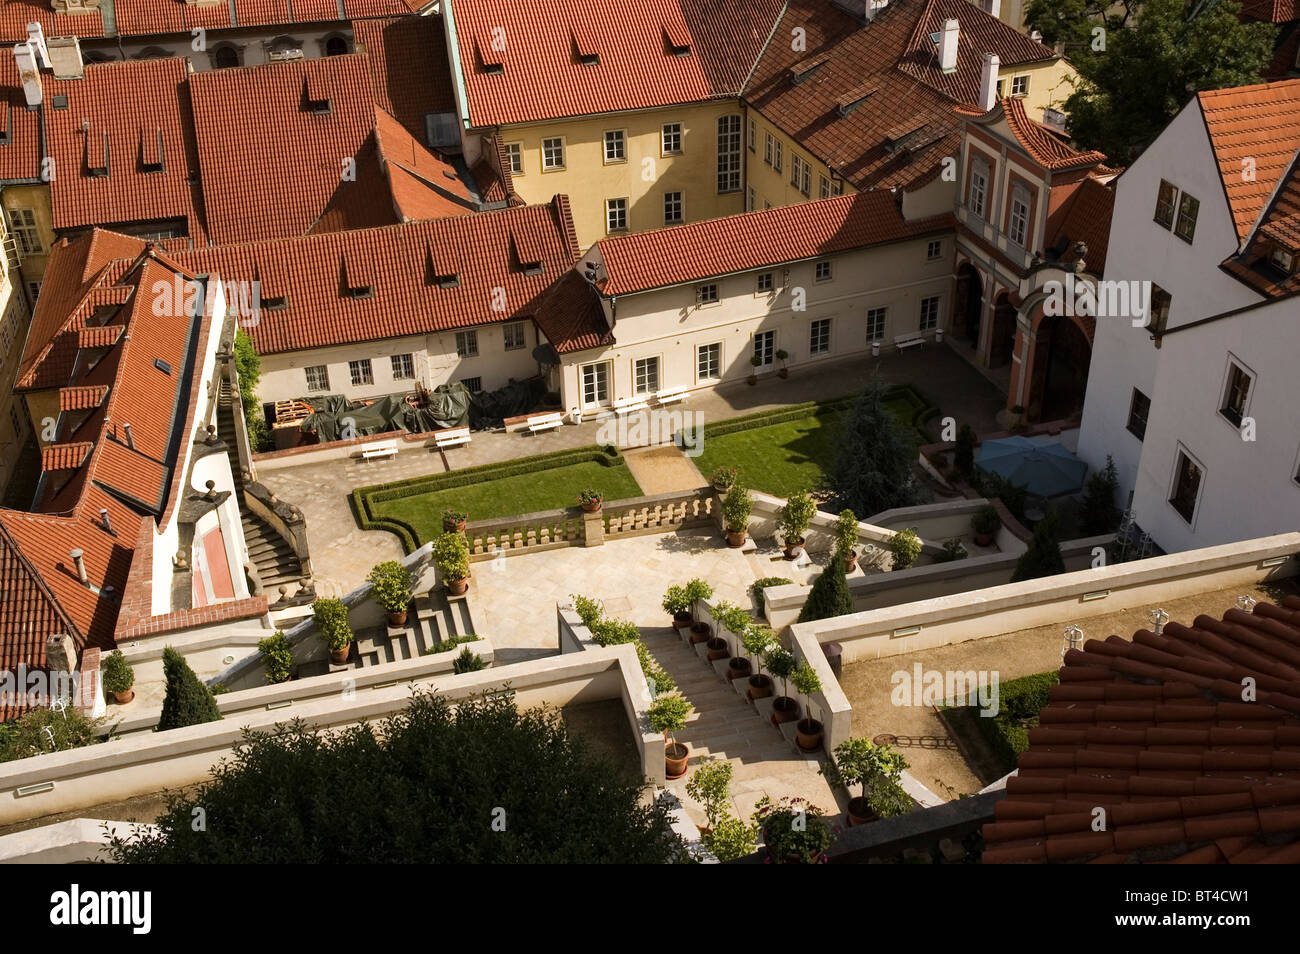 Elk188-1459 République Tchèque, Prague, Mala Strana, Palais Wallenstein, 17e c. vue du dessus, toits de tuiles rouges Banque D'Images